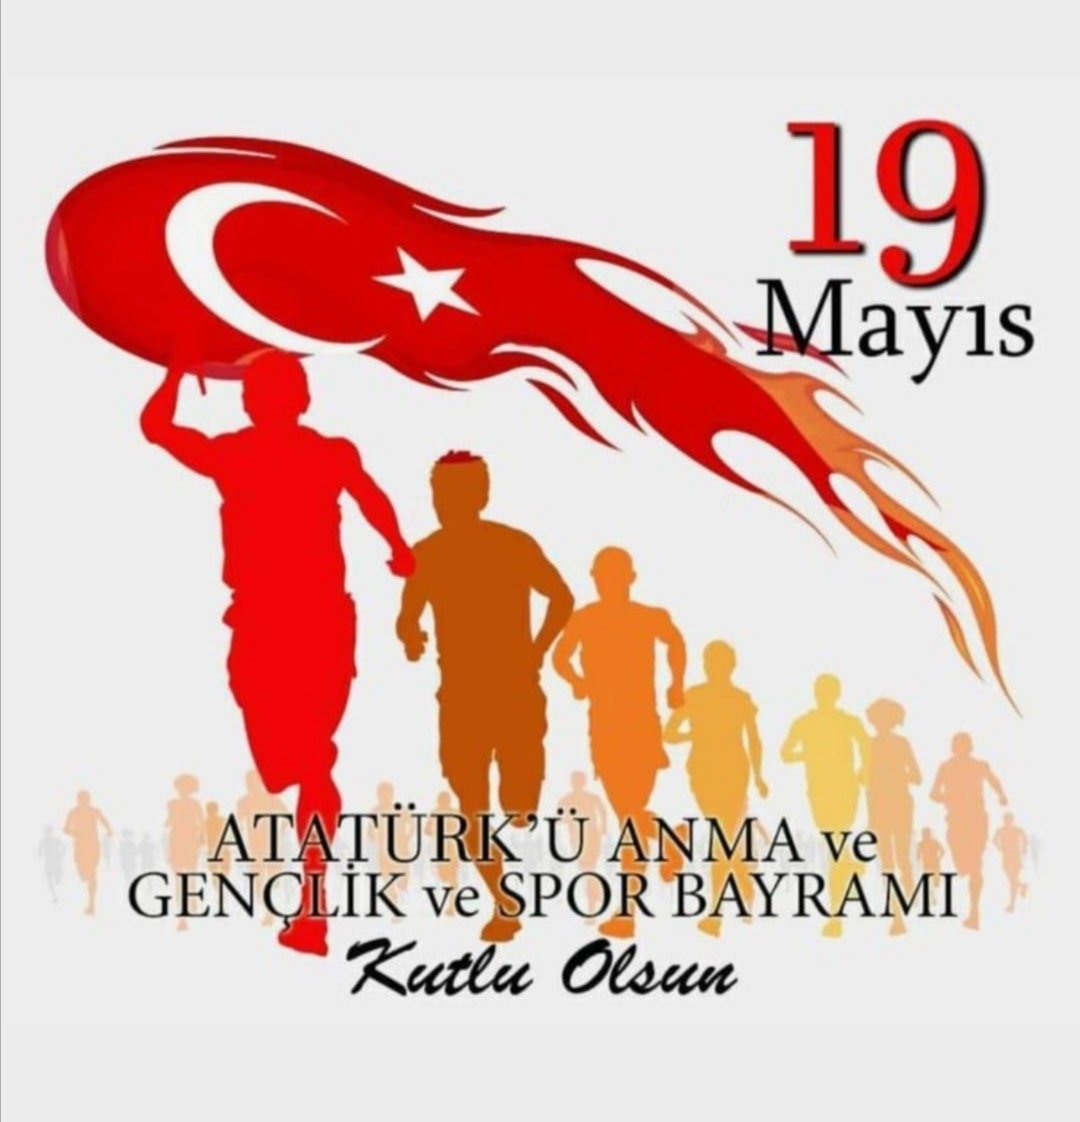 Özgür bir kadın olarak büyüme m senin eserin atam. Minnetle.. 
#AtatürküAnmaGençlikveSporBayramı